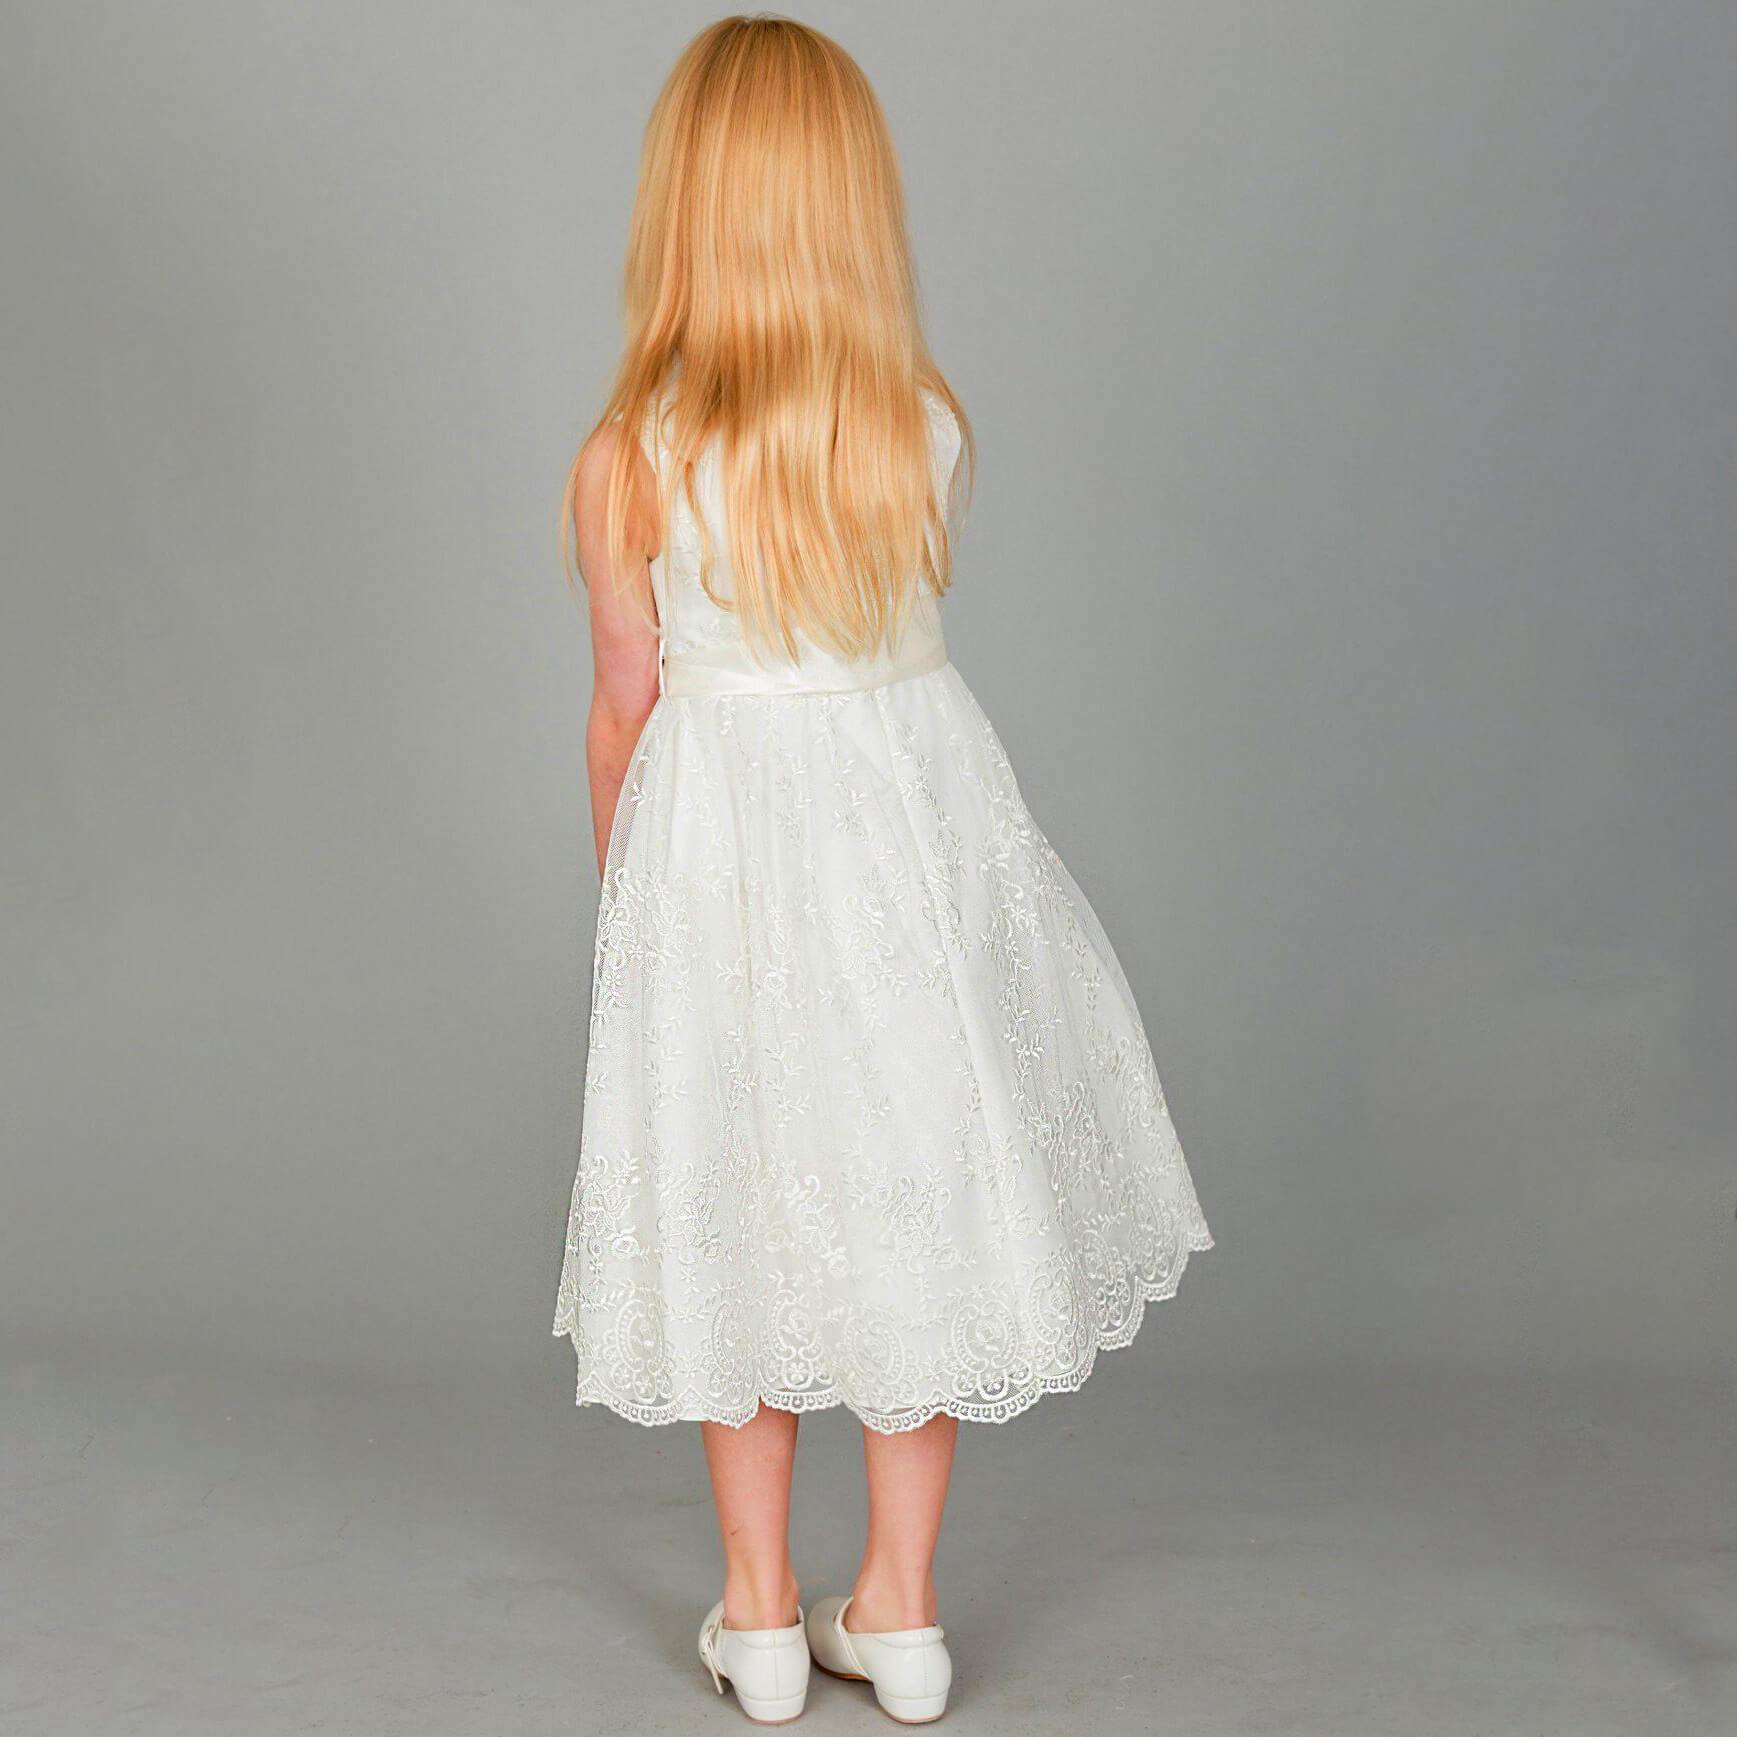 Blond girl in white dress